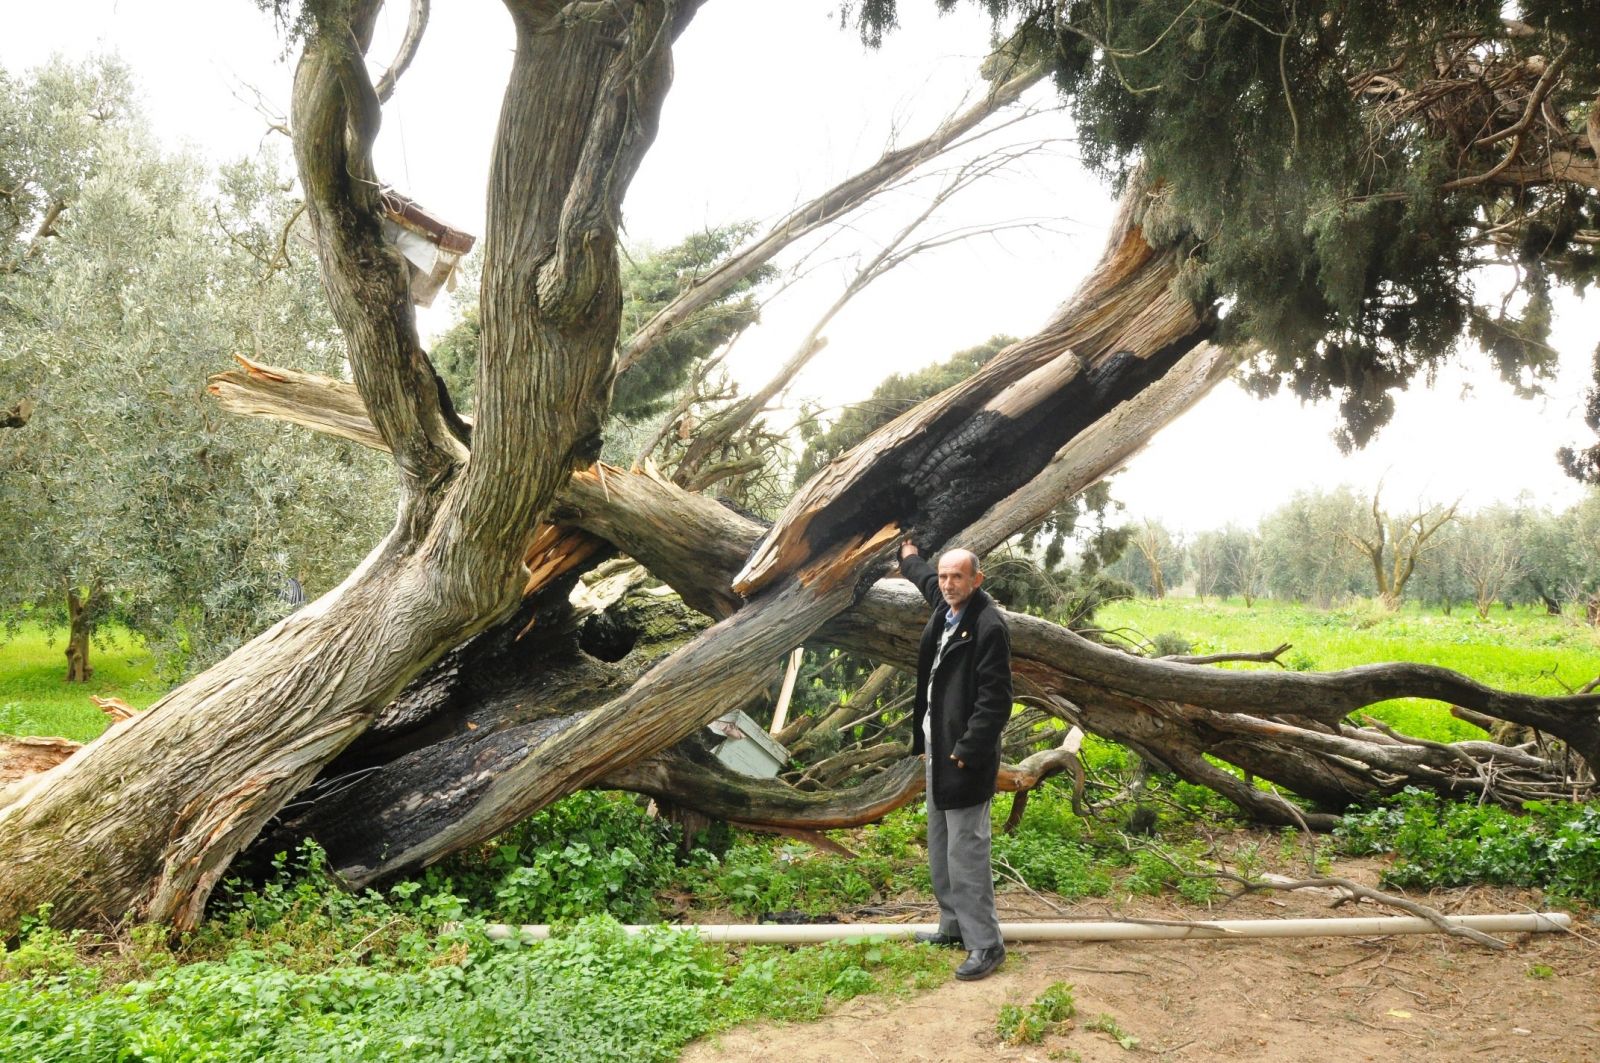 Bursa İznik 700 yıllık servi ağaçlarını yakıp kestiler